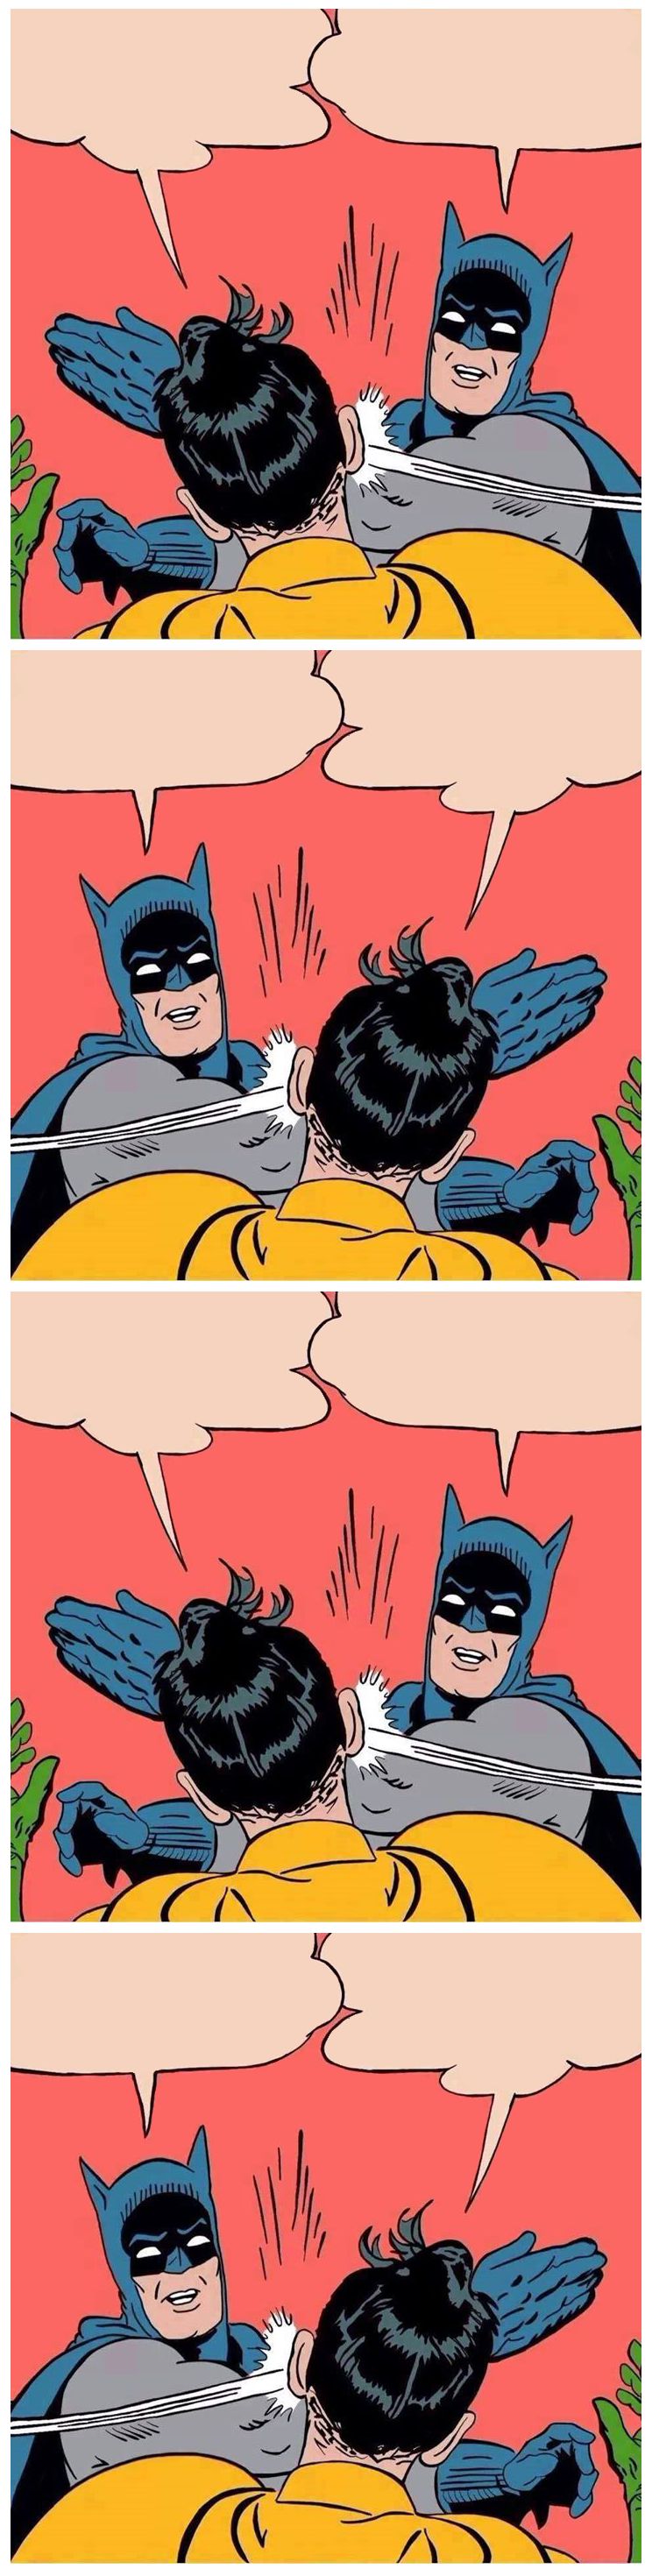 Batman slaps robin again and again Blank Meme Template